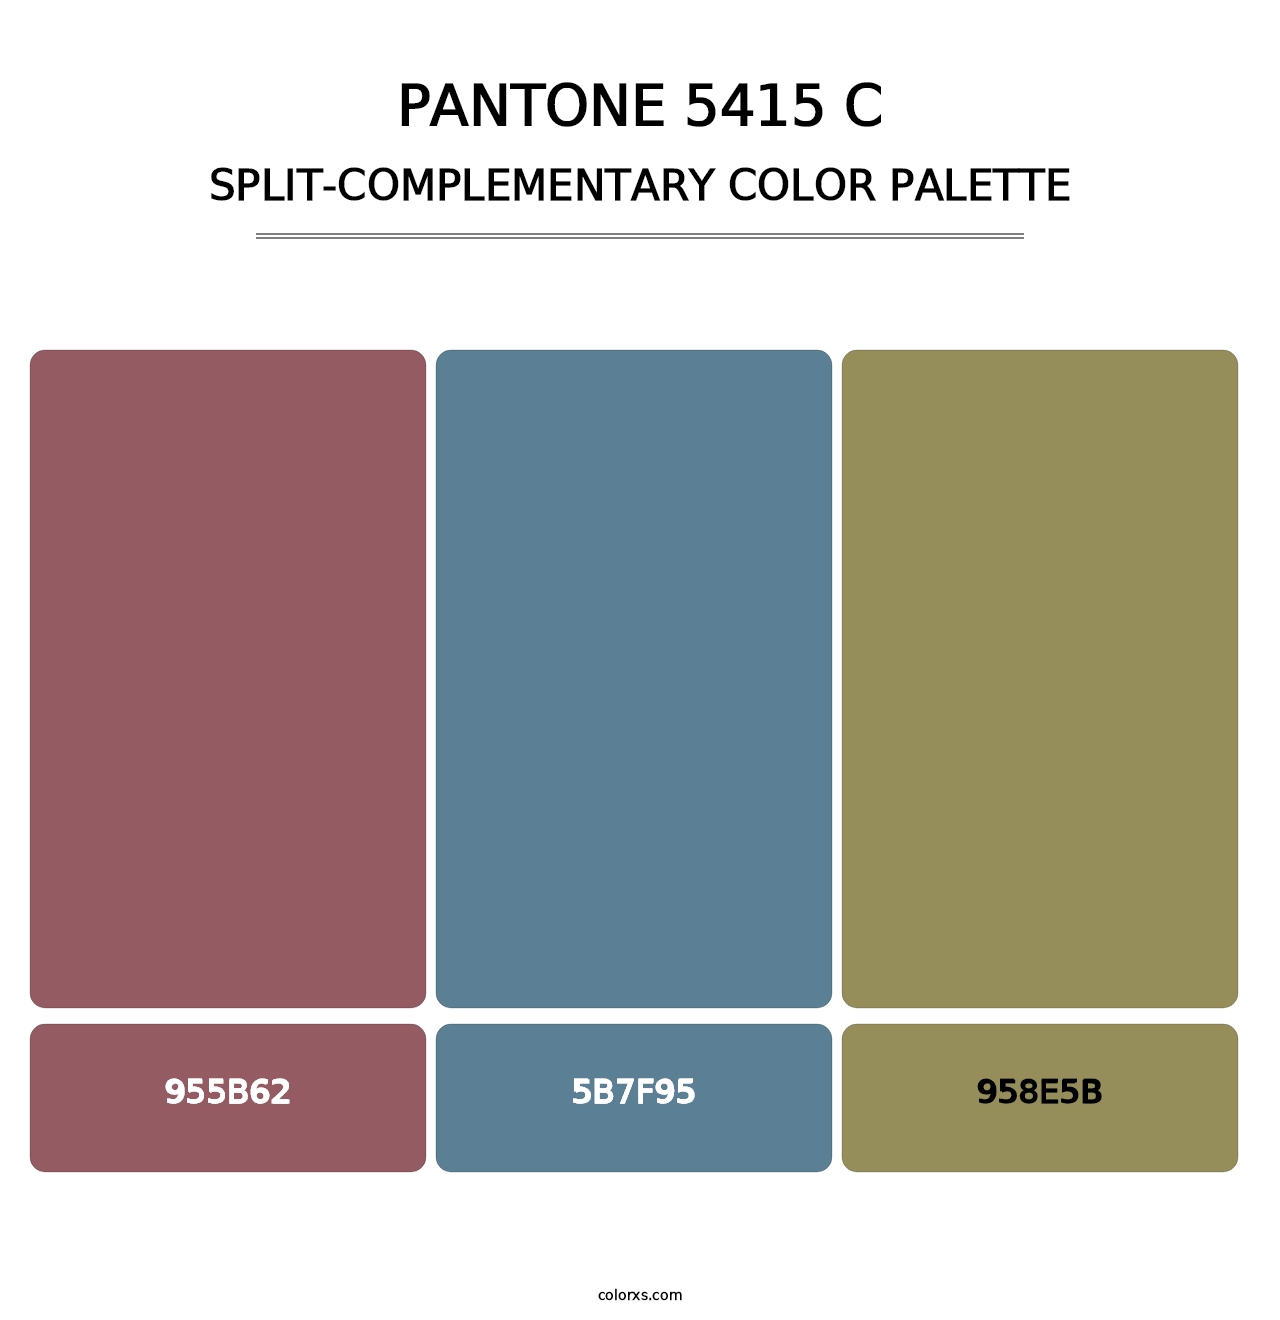 PANTONE 5415 C - Split-Complementary Color Palette